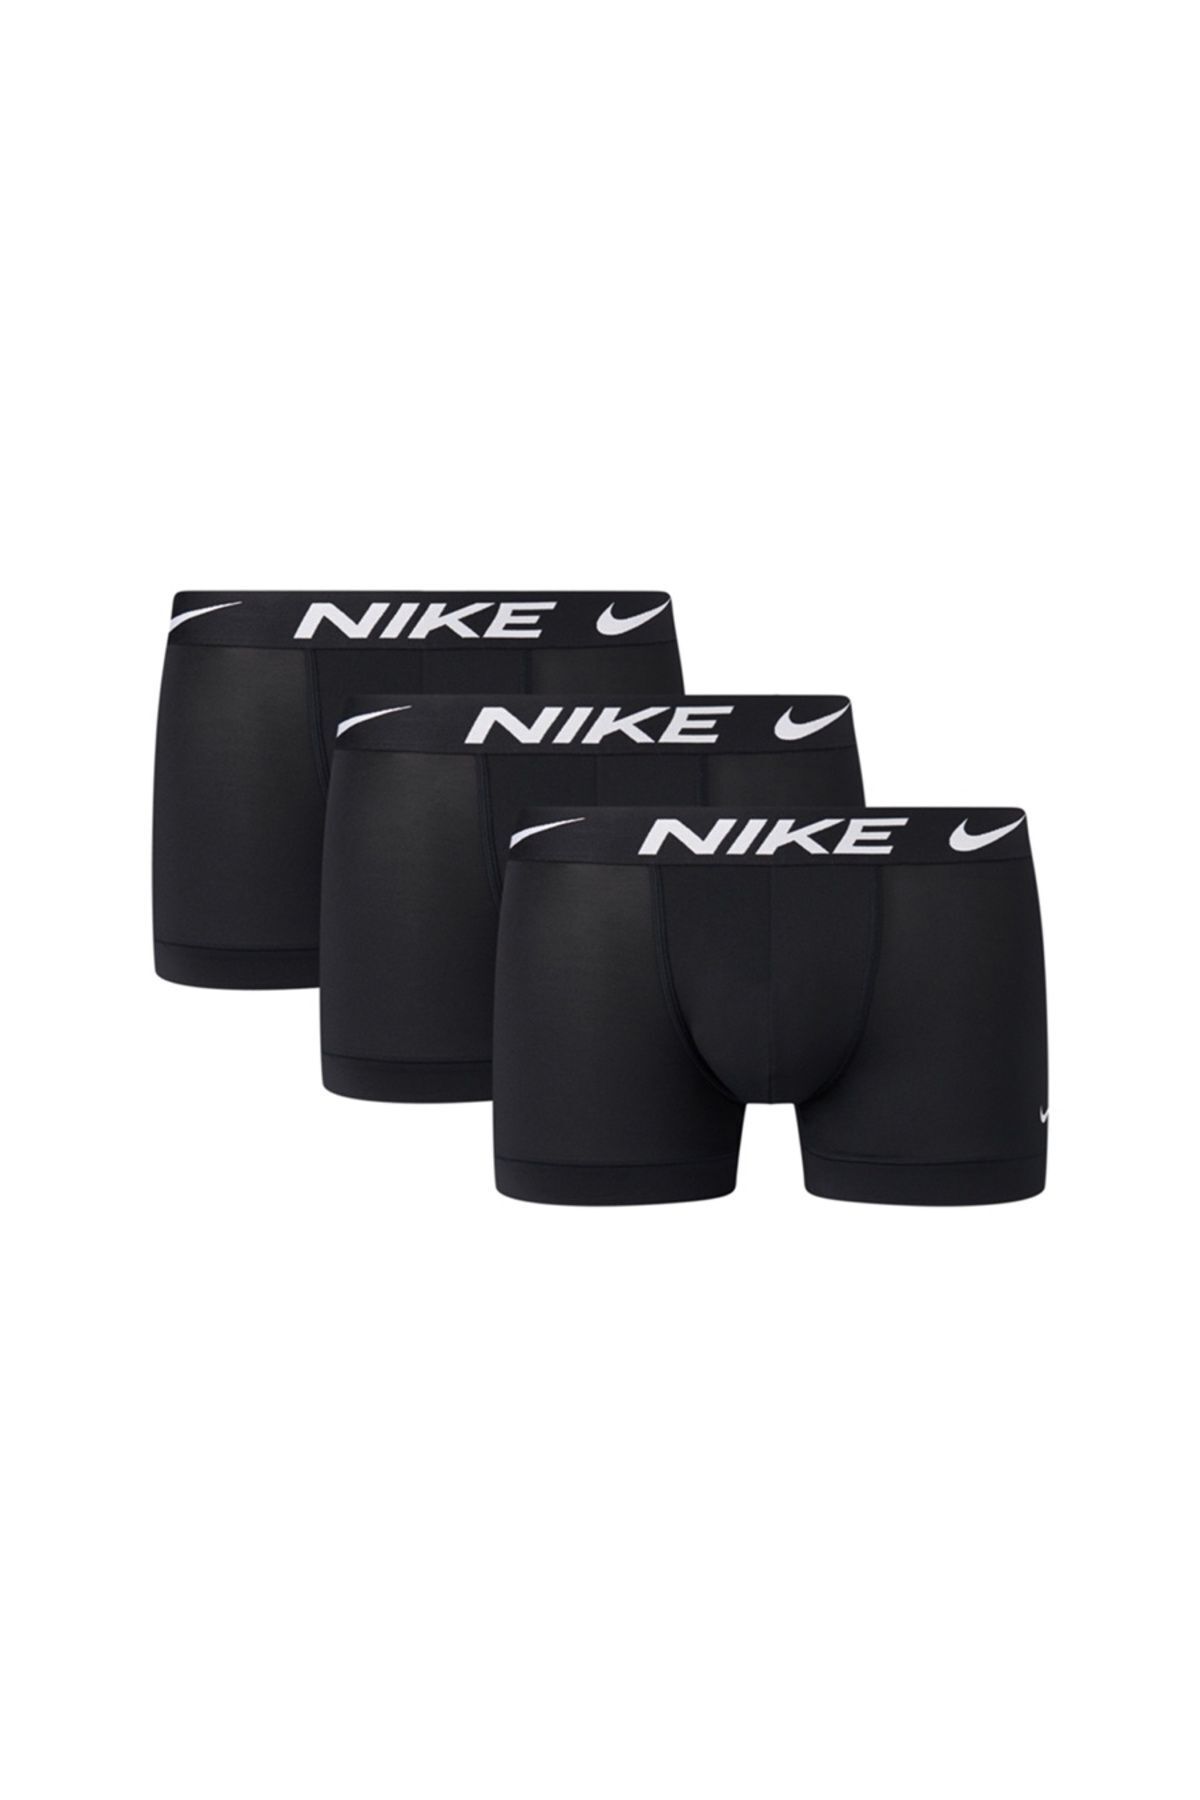 Nike Erkek Marka Logolu Elastik Bantlı Günlük Kullanıma Uygun Siyah Boxer 0000ke1156-ub1